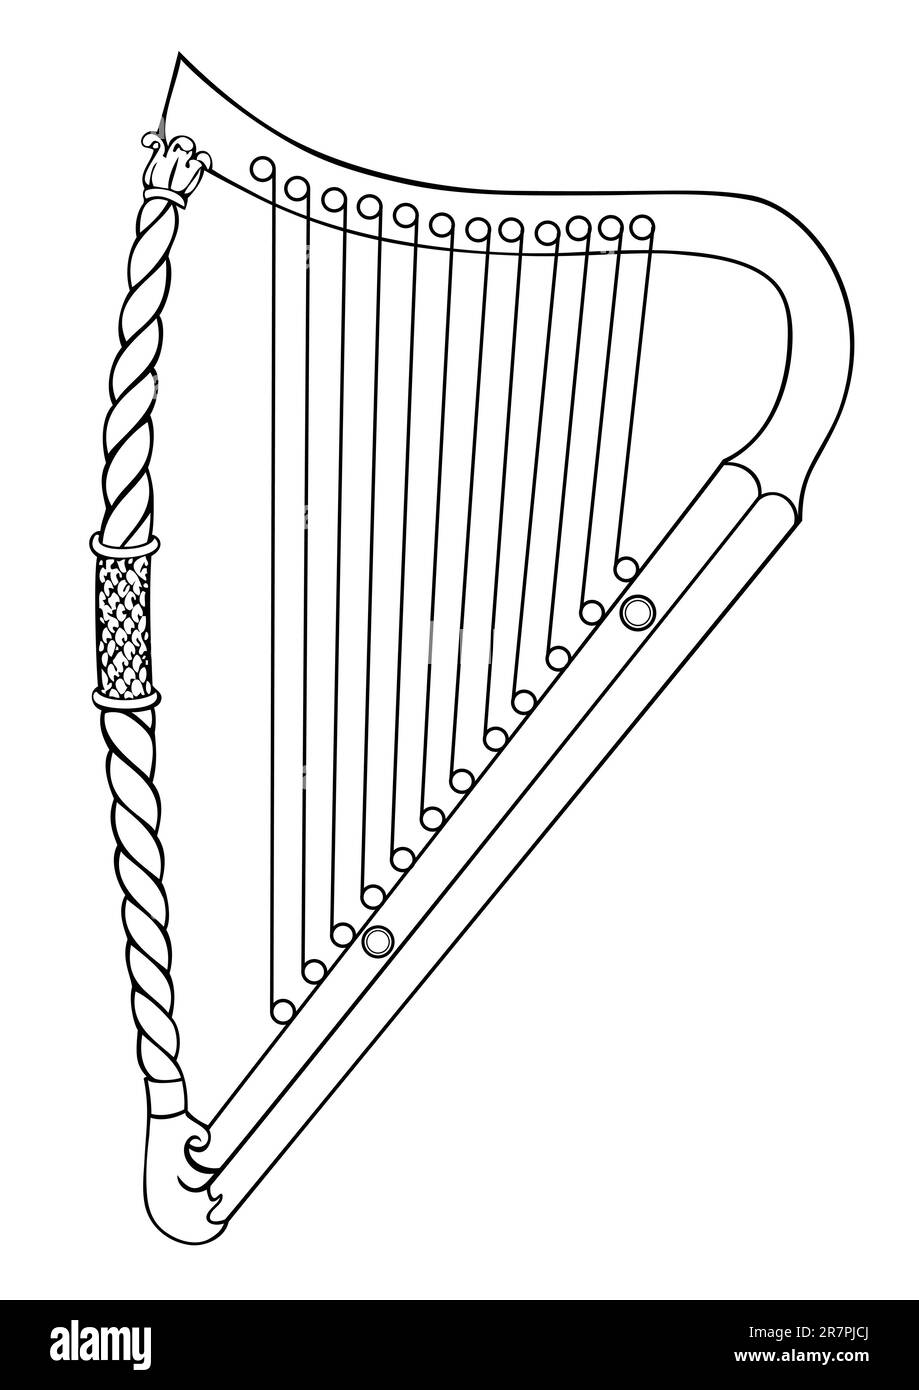 Darstellung der irischen Harfe aus dem 12. Jahrhundert. Diese Datei ist ein Vektor und kann ohne Qualitätsverlust auf jede Größe skaliert werden Stock Vektor